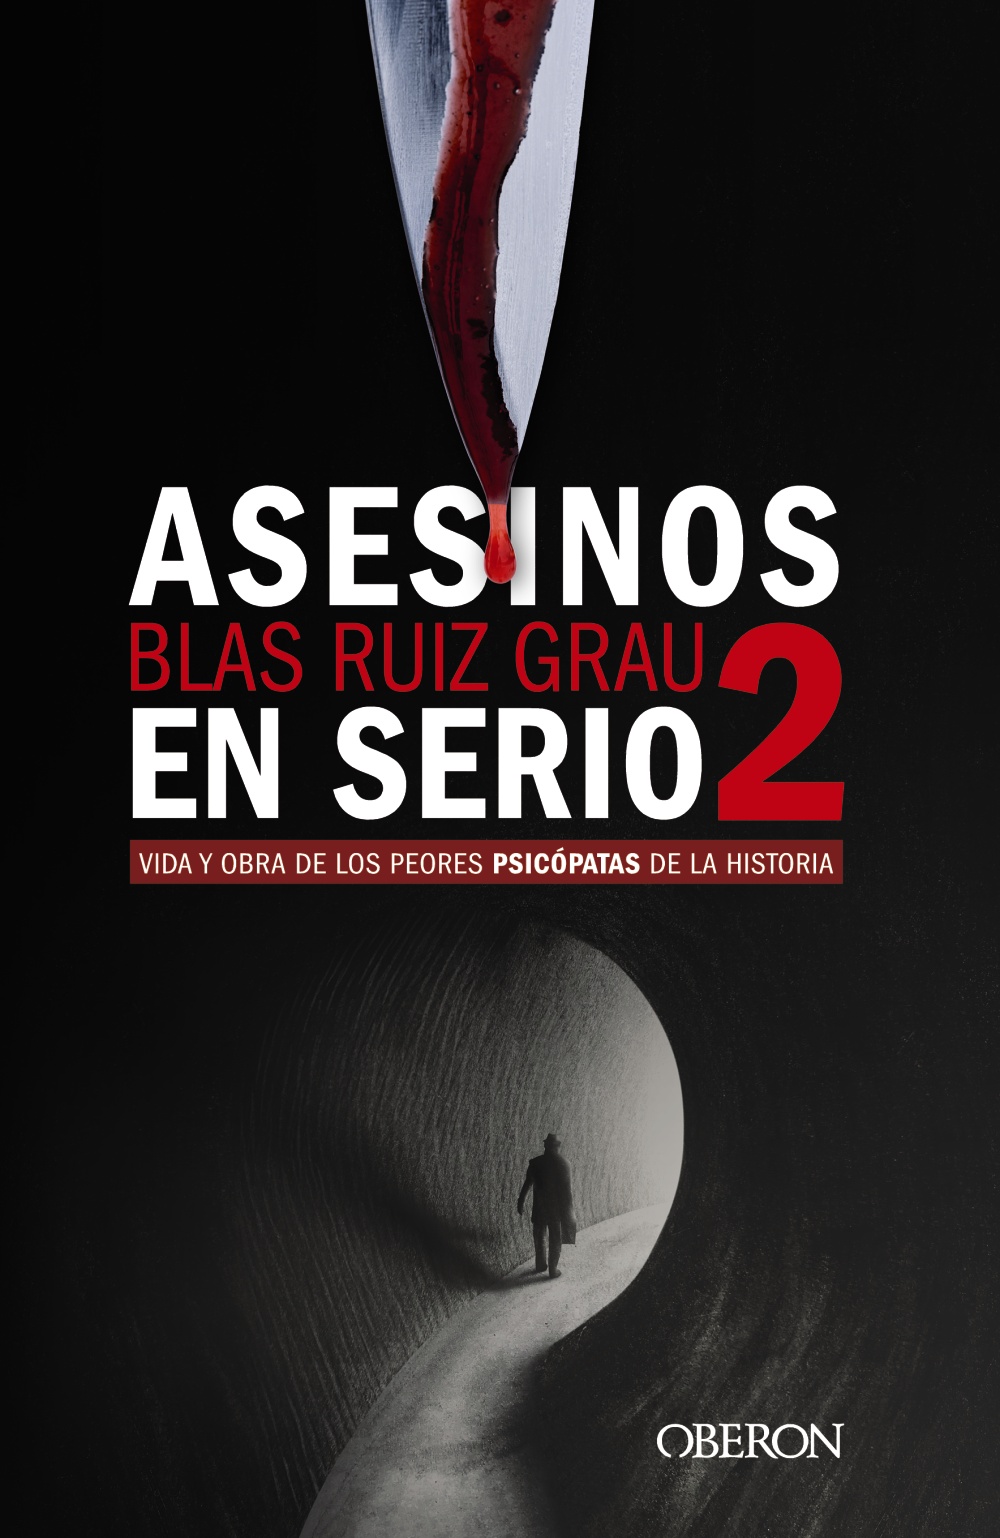 Asesinos en serio 2, de Blas Ruiz Grau - Zenda